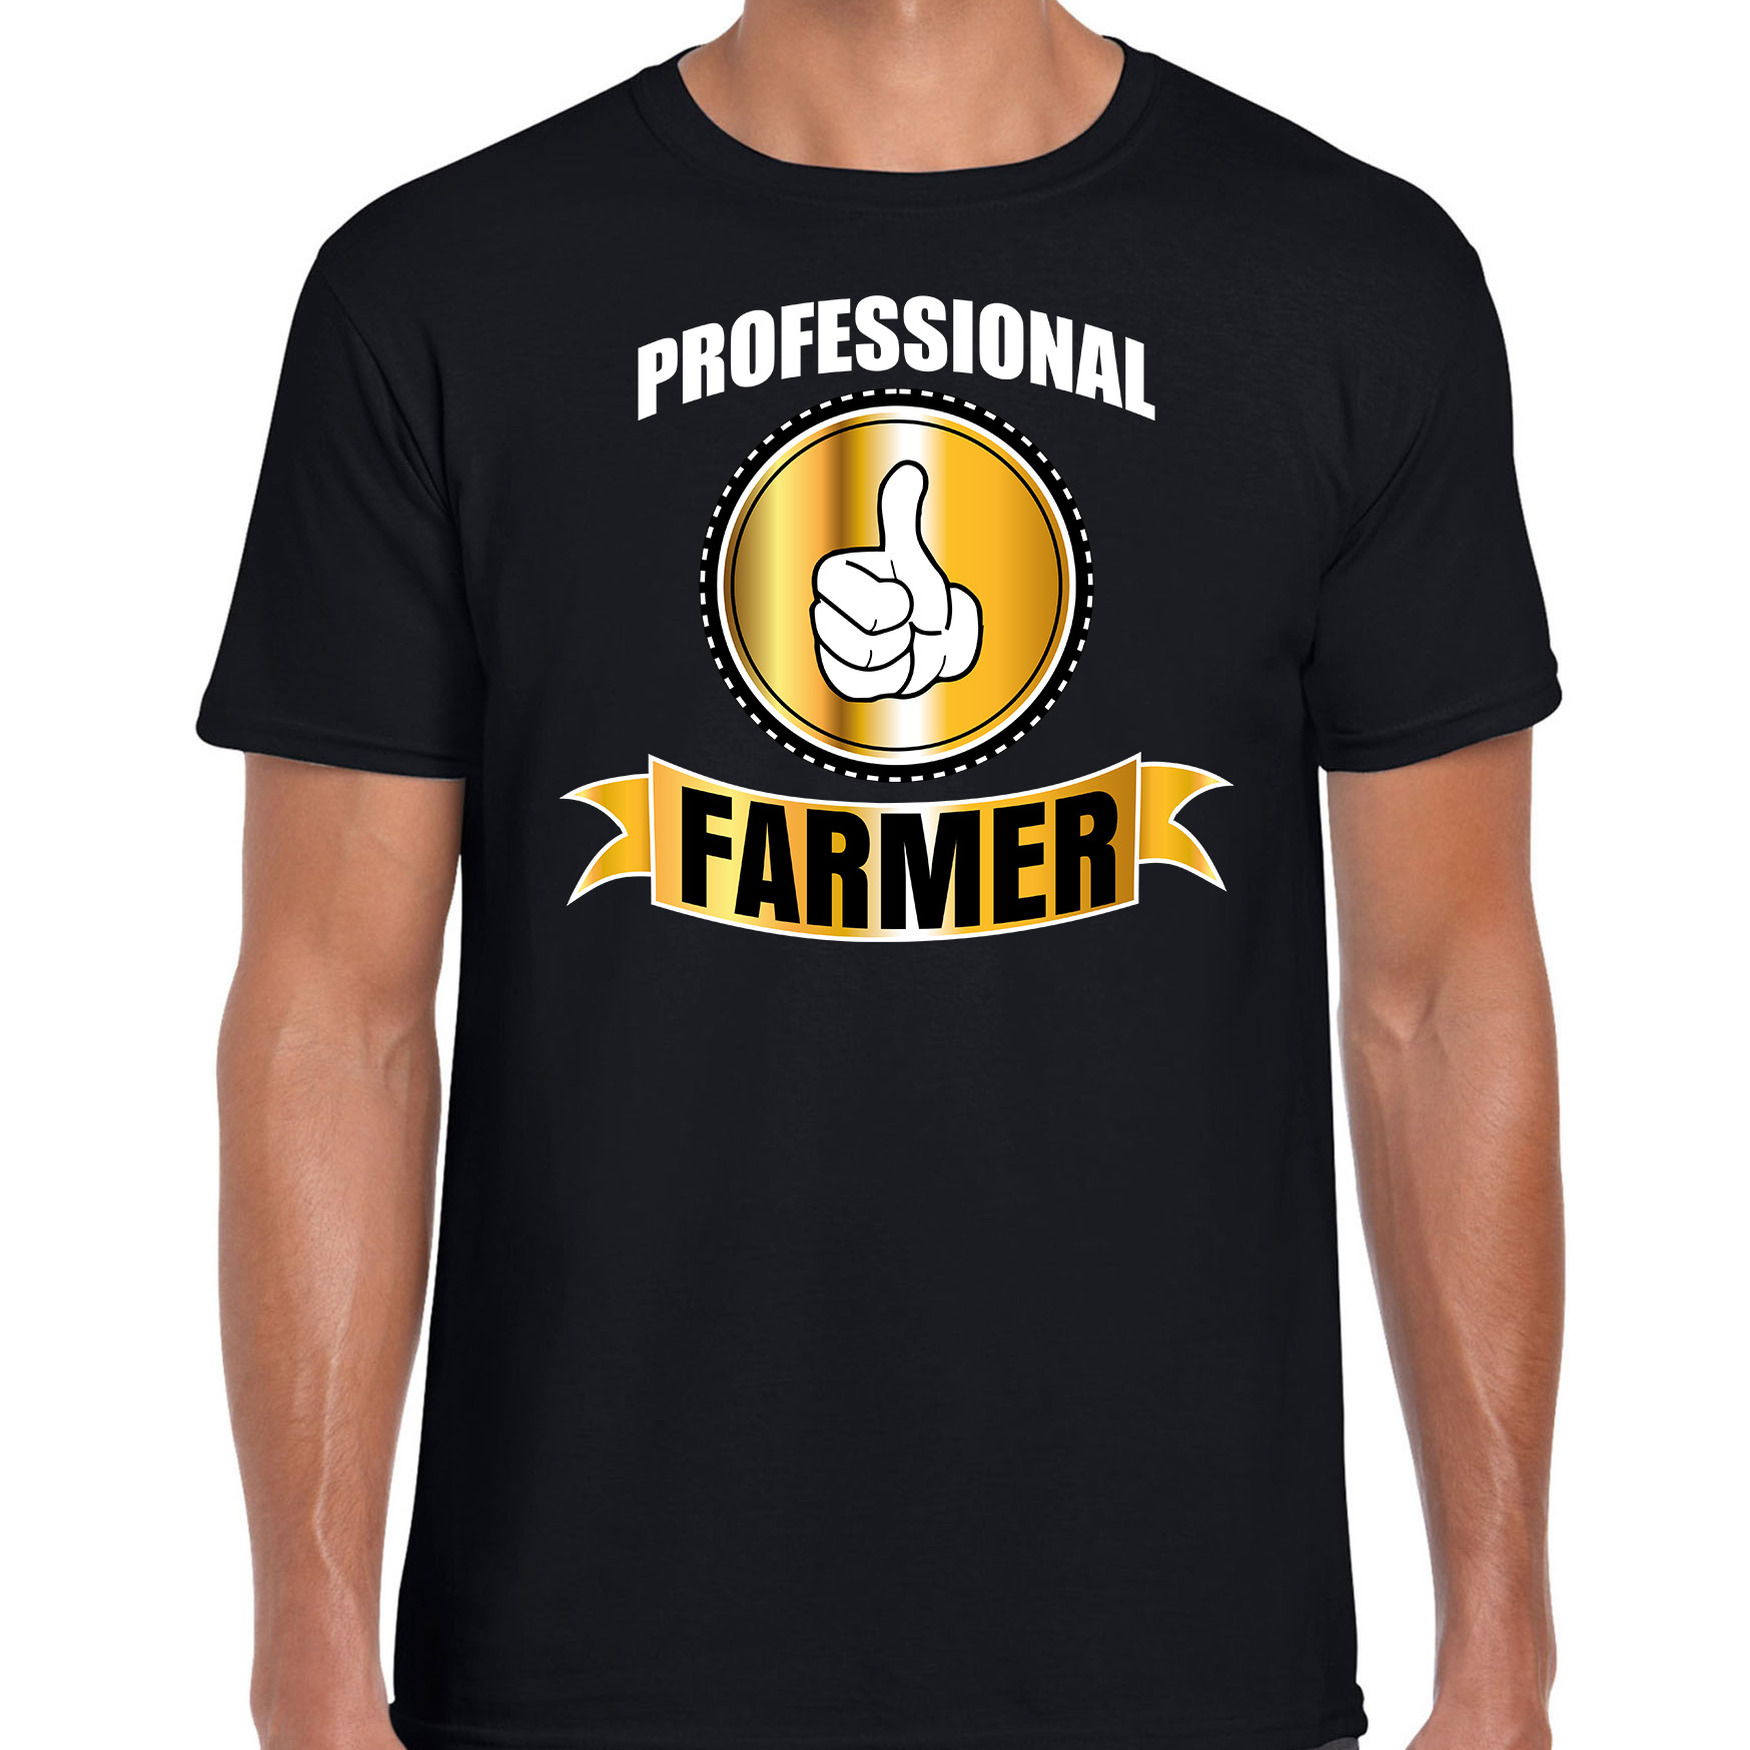 Professional farmer-professionele boer t-shirt zwart heren Boer cadeau shirt